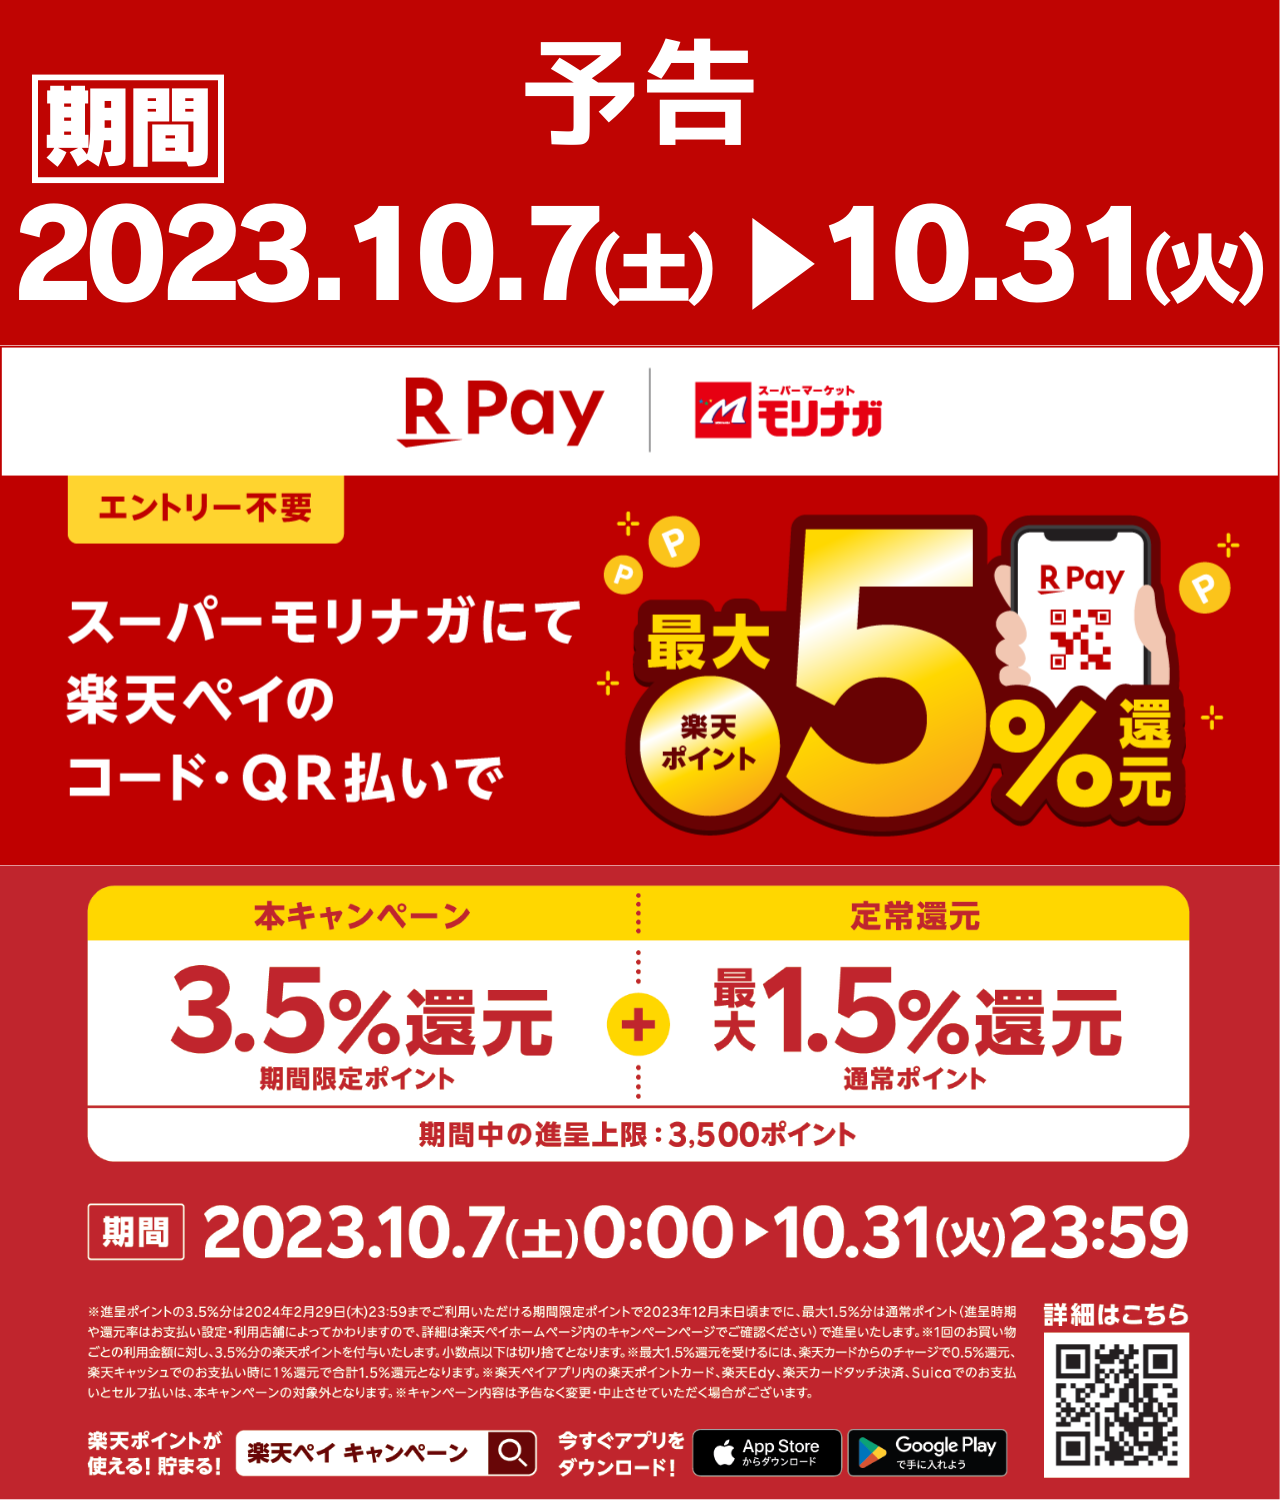 楽天×スーパーモリナガ企画
楽天ペイ最大5％還元キャンペーン（2023.10.7～2023.10.31）